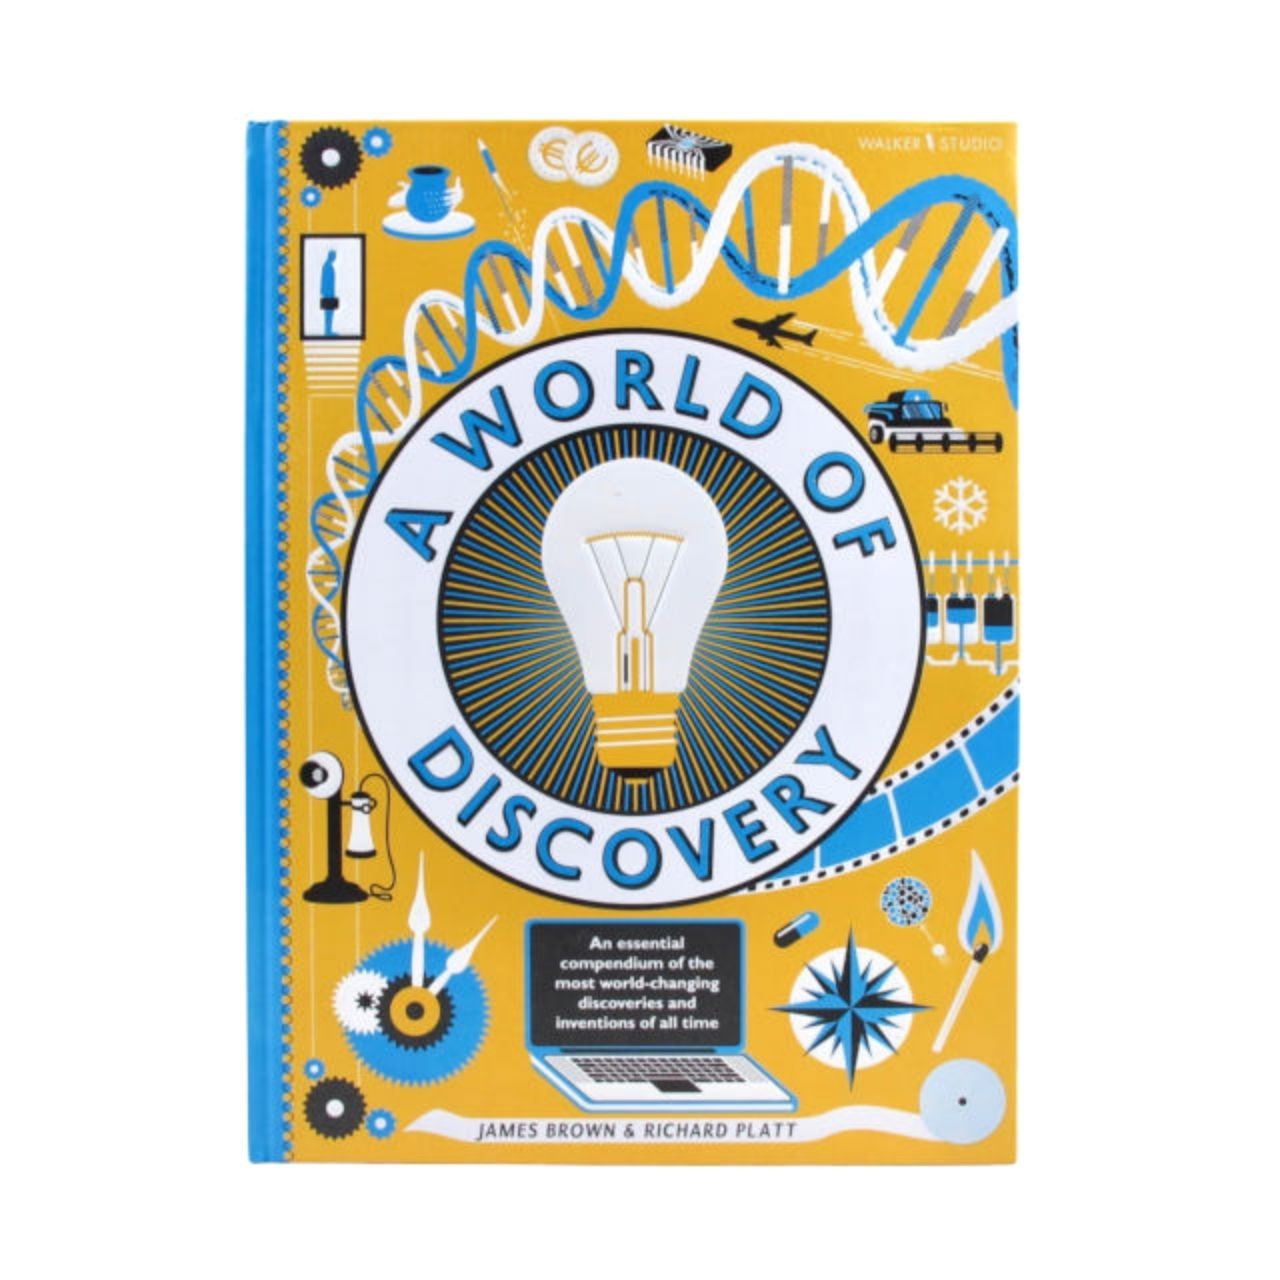 Walker Books A World of Discovery Book by James Brown & Richard Platt